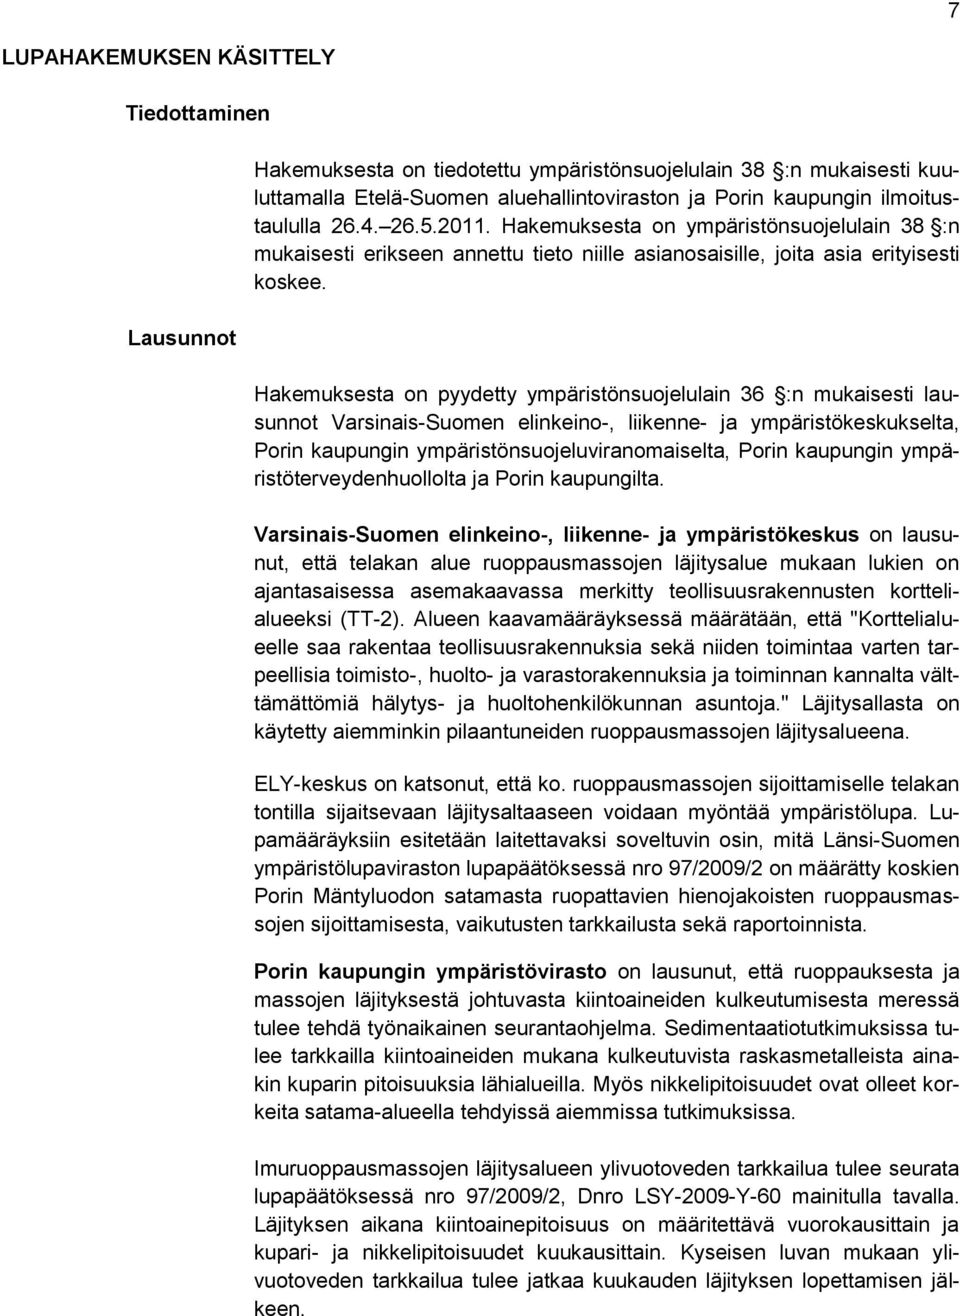 Hakemuksesta on pyydetty ympäristönsuojelulain 36 :n mukaisesti lausunnot Varsinais-Suomen elinkeino-, liikenne- ja ympäristökeskukselta, Porin kaupungin ympäristönsuojeluviranomaiselta, Porin